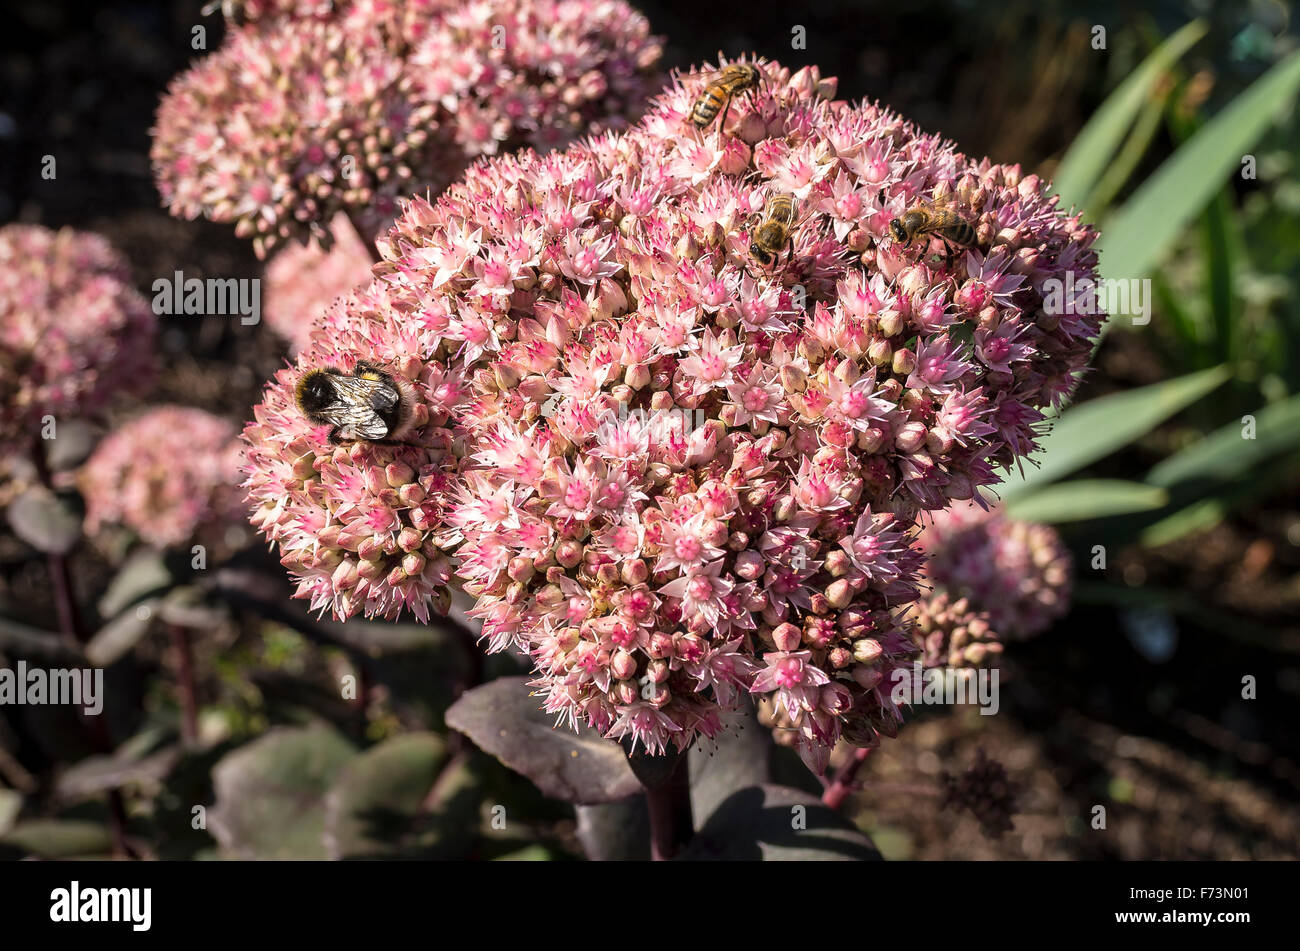 Wild bees attracted to flowering head of Sedum Matrona in October Stock Photo